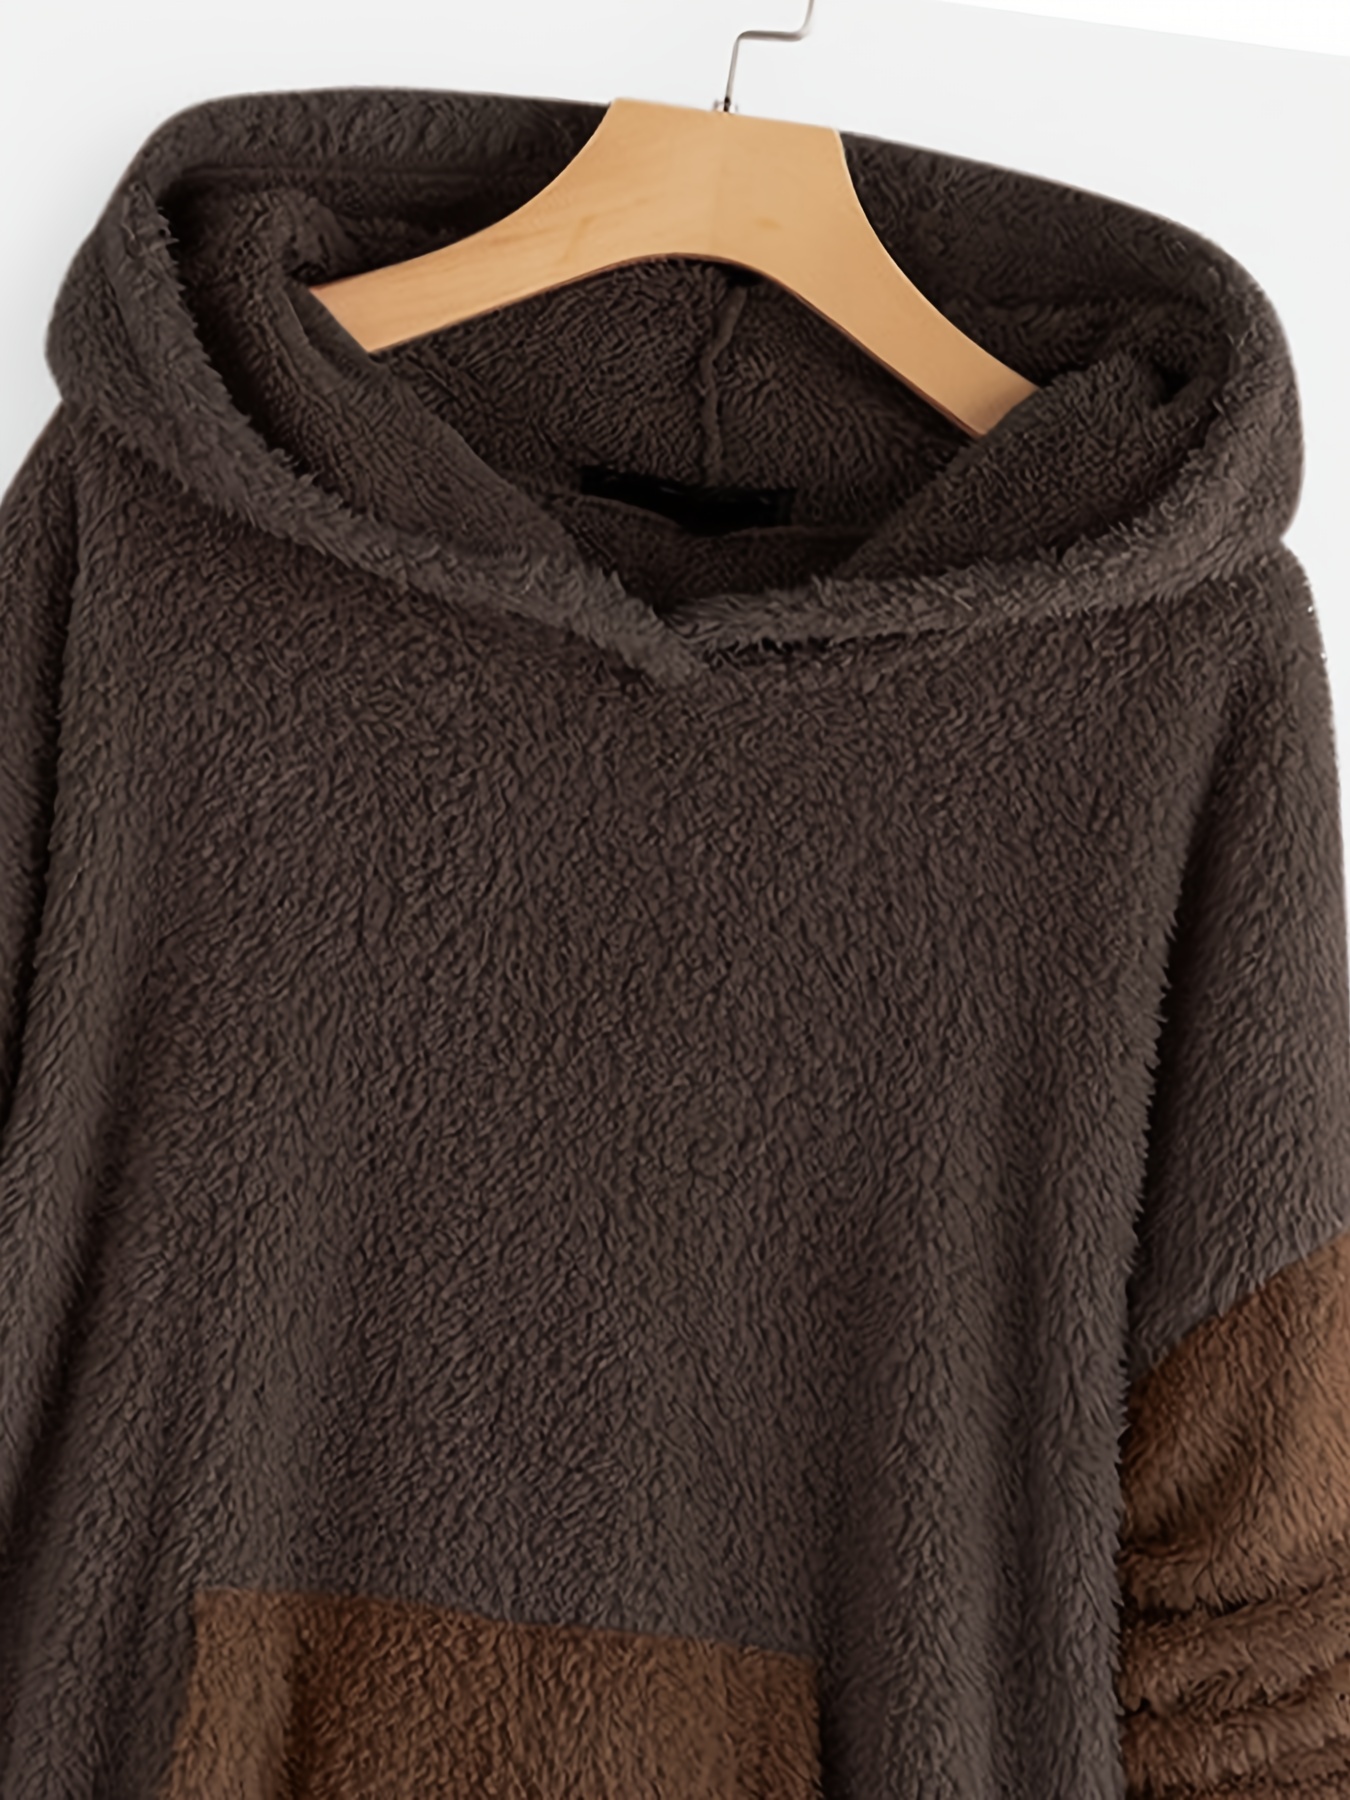 color block kangaroo pocket hoodie long sleeve thermal hoodies sweatshirt womens clothing details 8